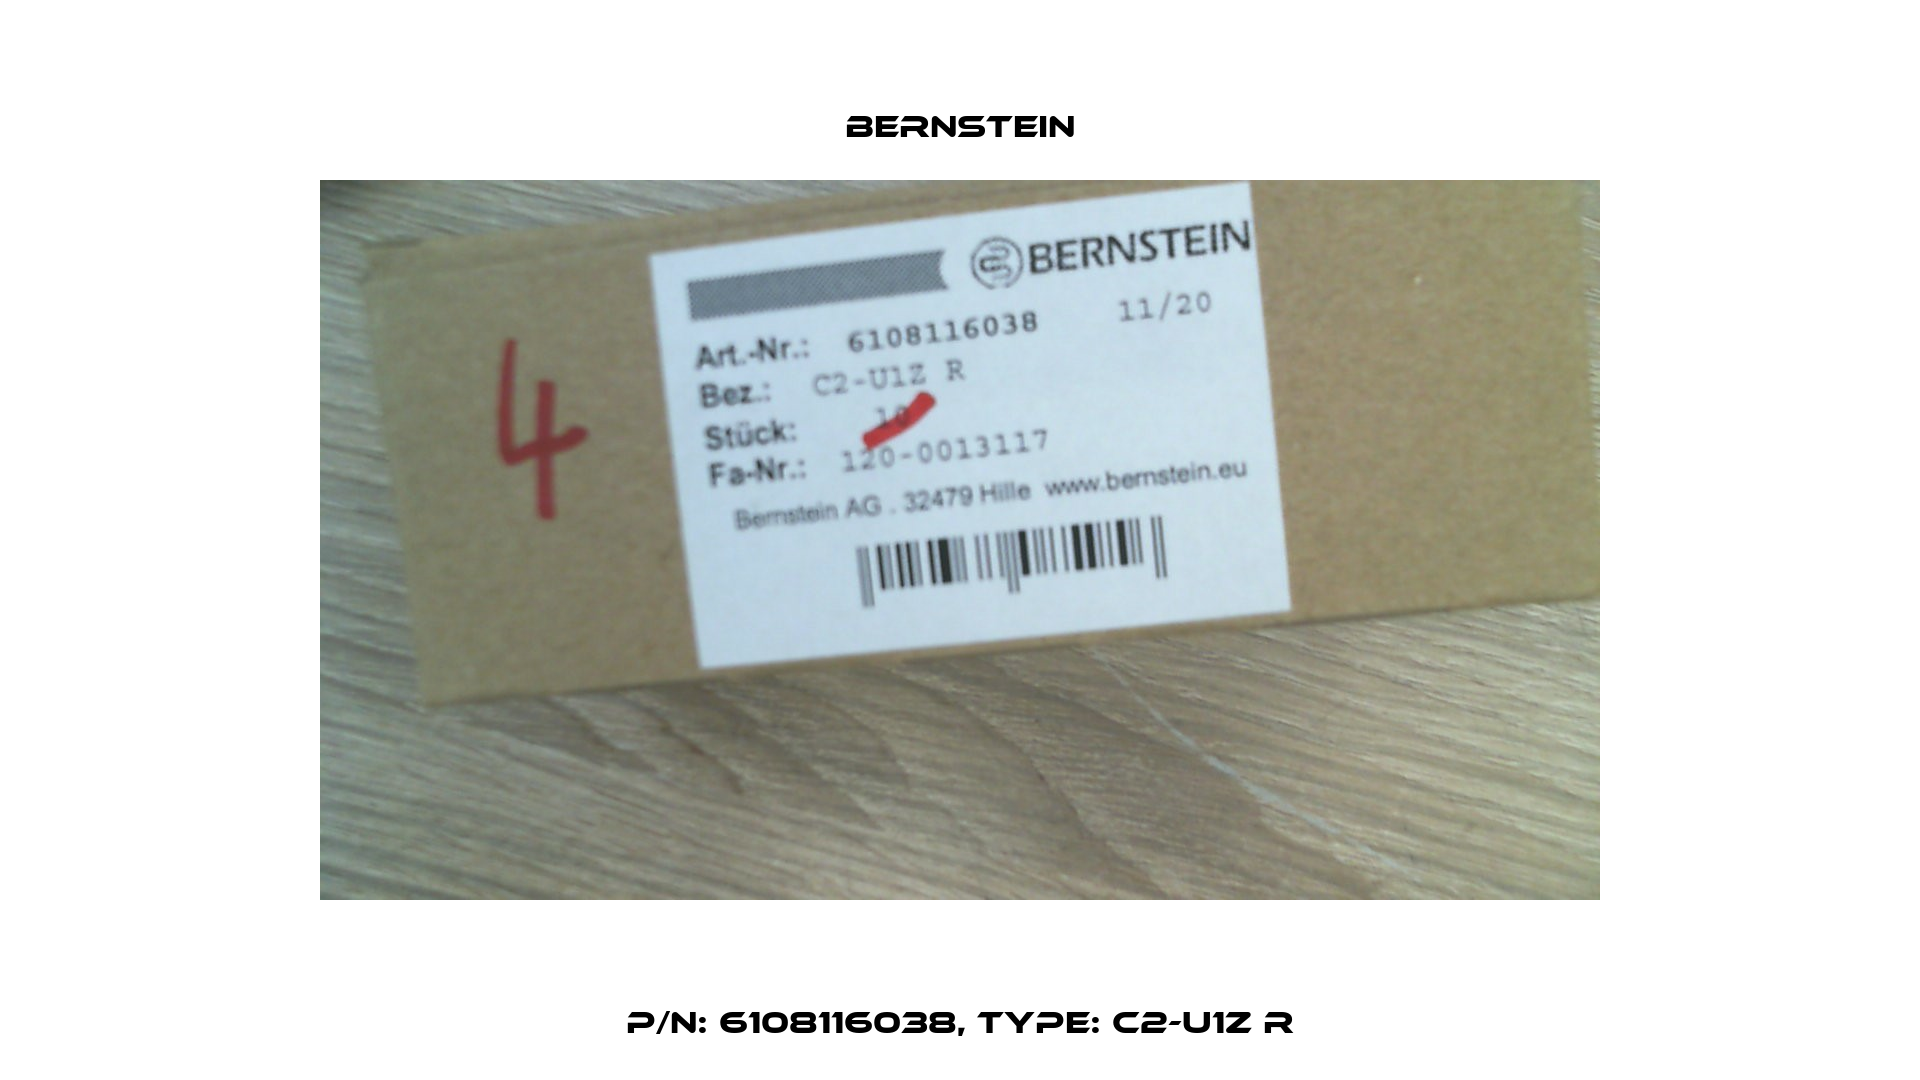 P/N: 6108116038, Type: C2-U1Z R Bernstein